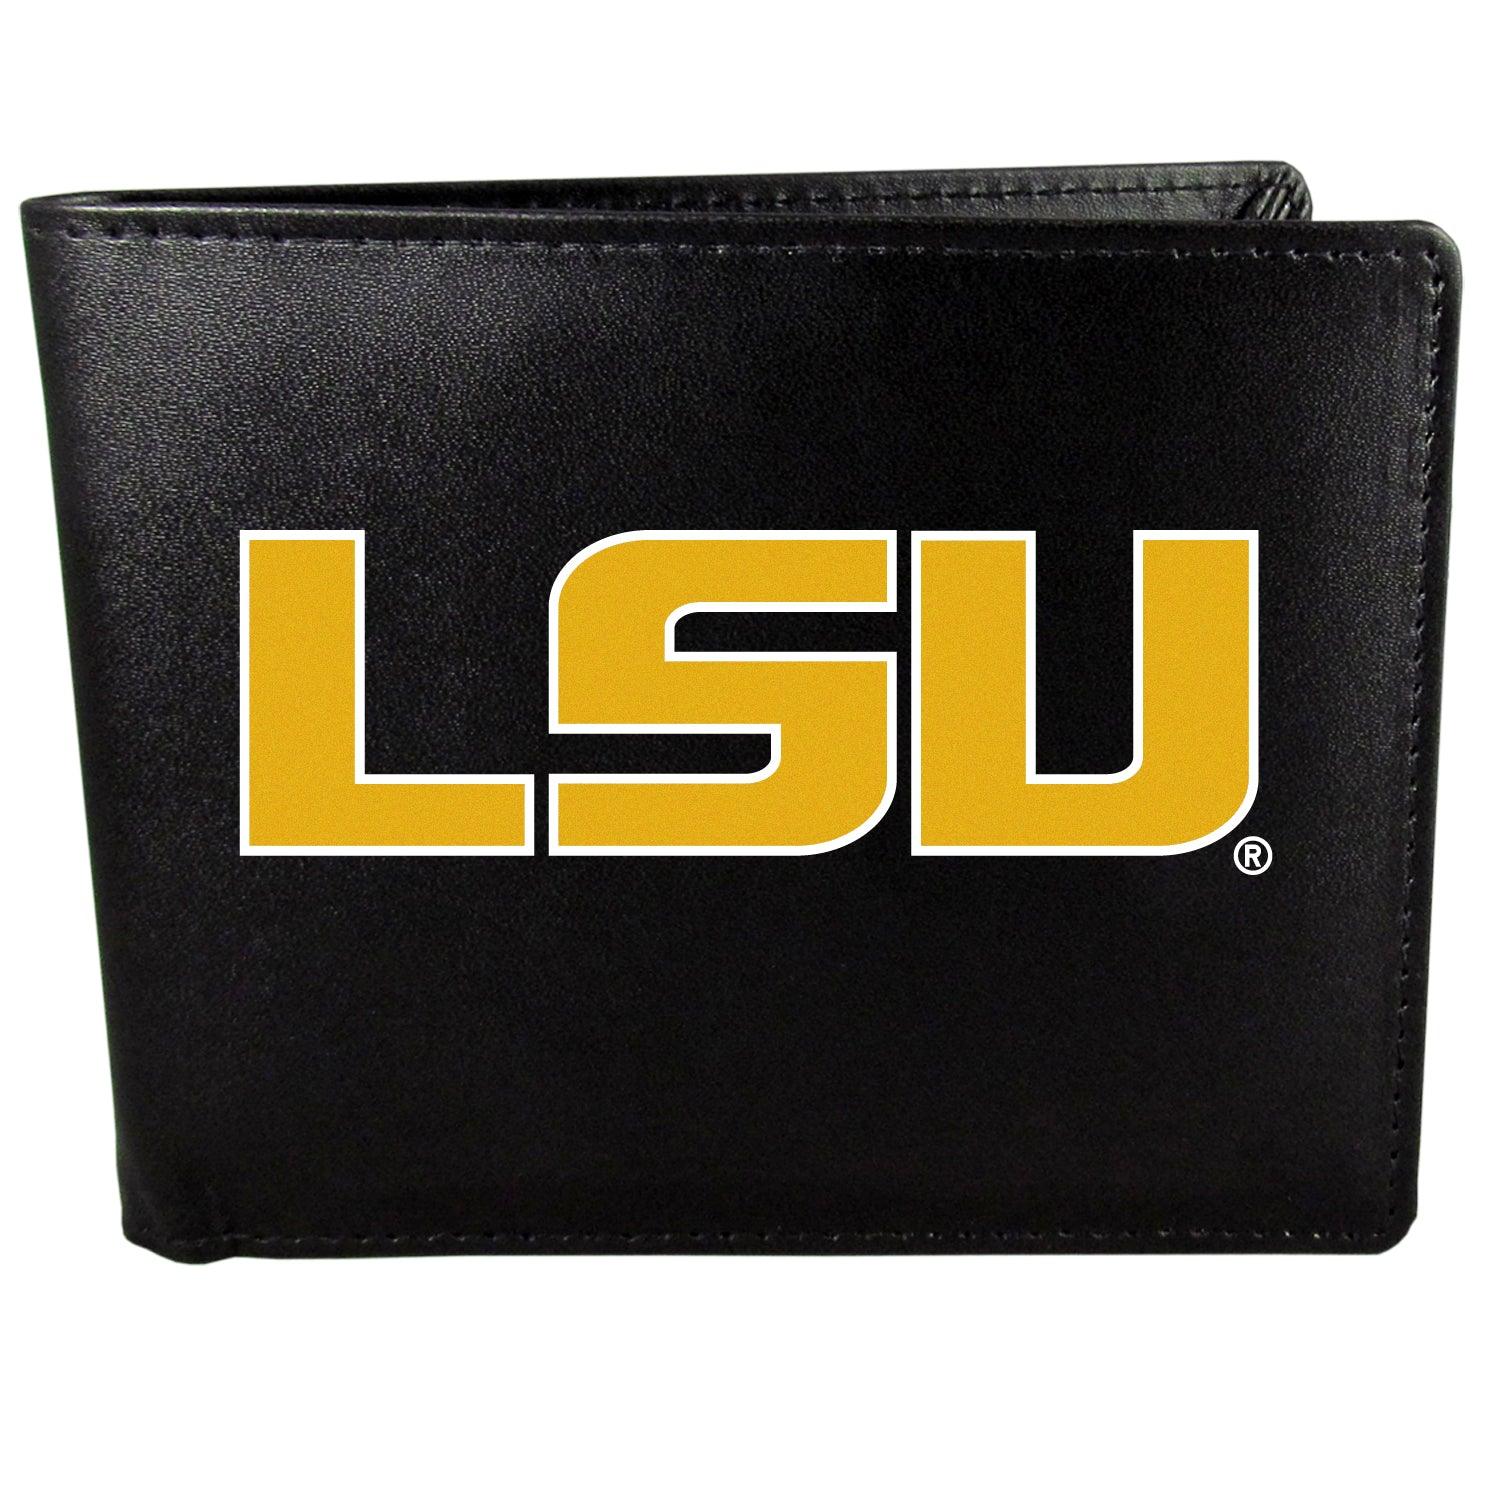 LSU Tigers Bi-fold Wallet Large Logo - Flyclothing LLC